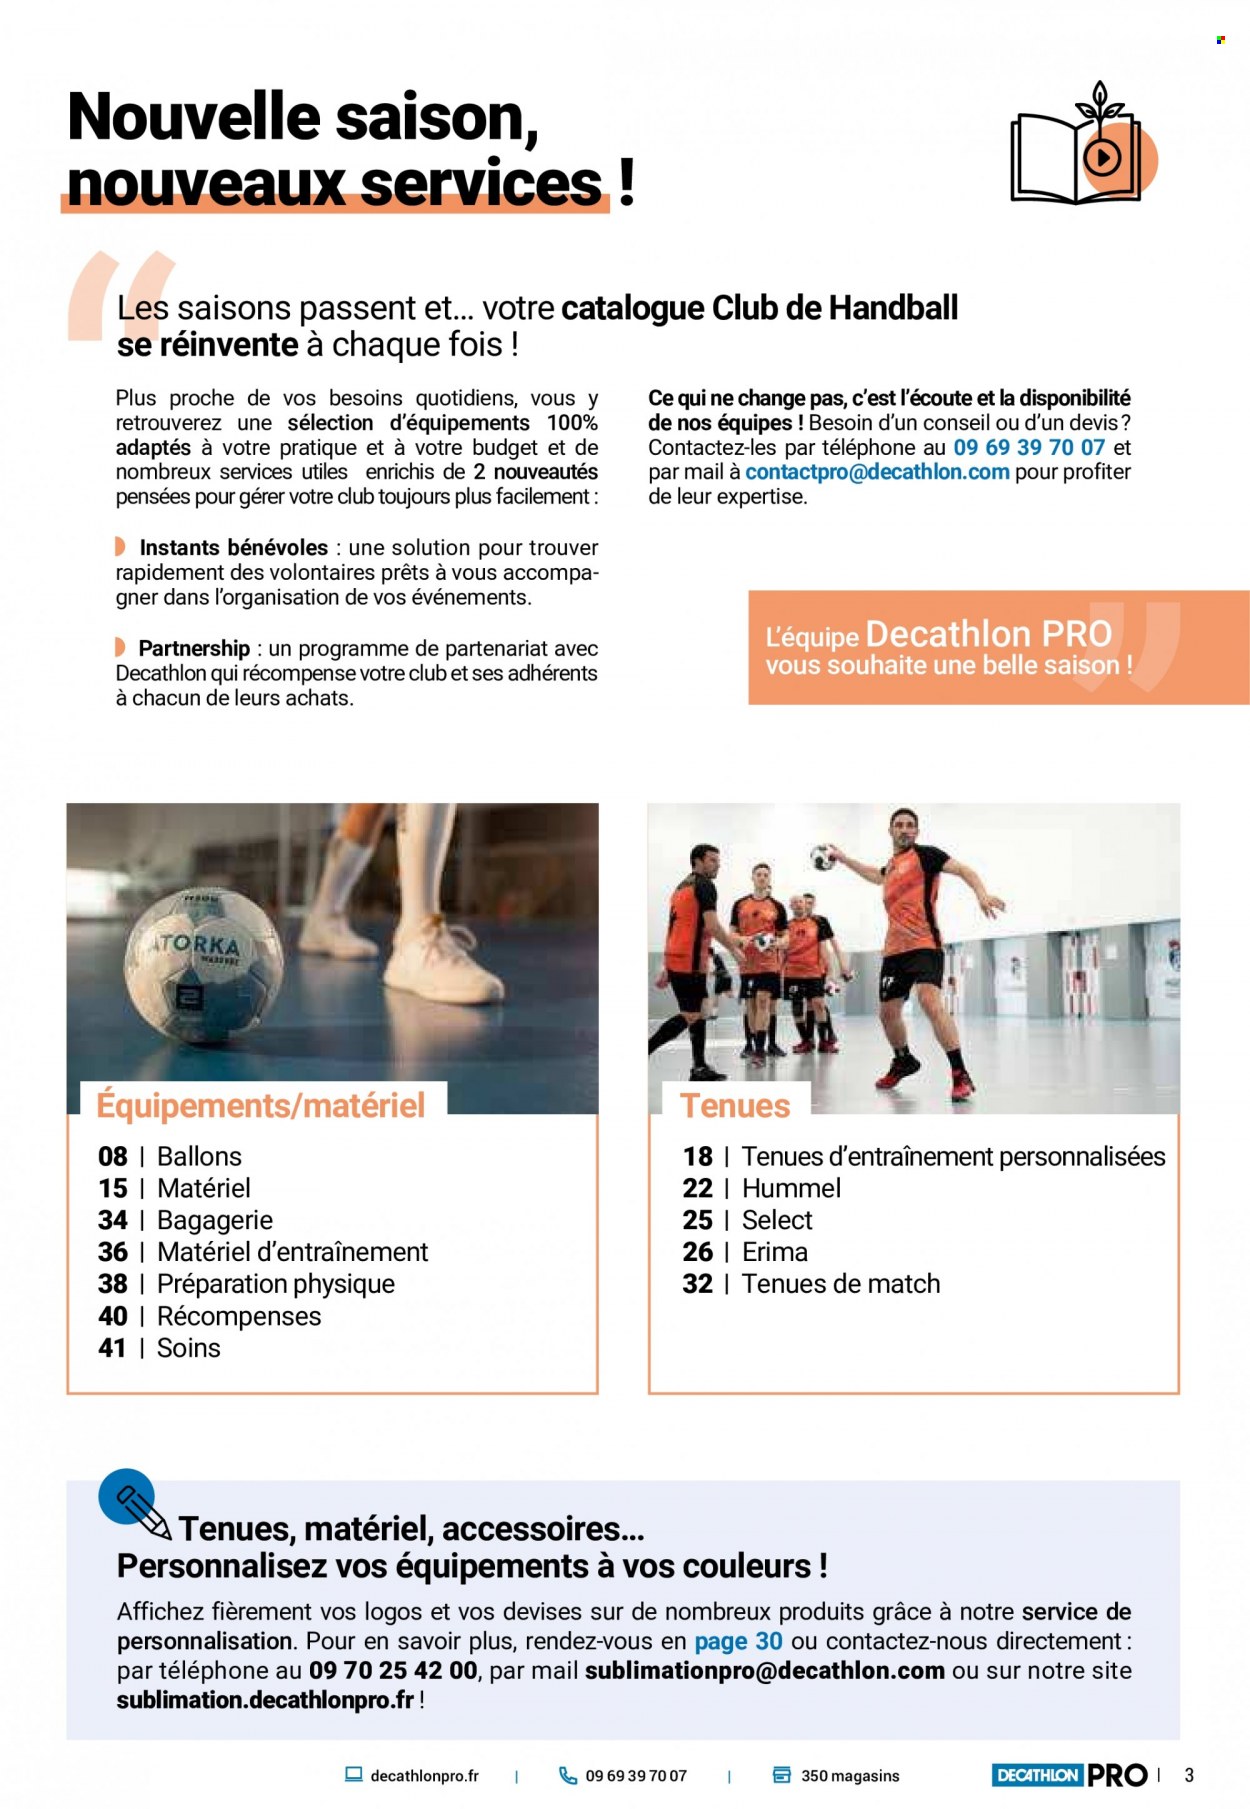 thumbnail - Catalogue Decathlon - Produits soldés - Hummel, Erima, ballon. Page 3.